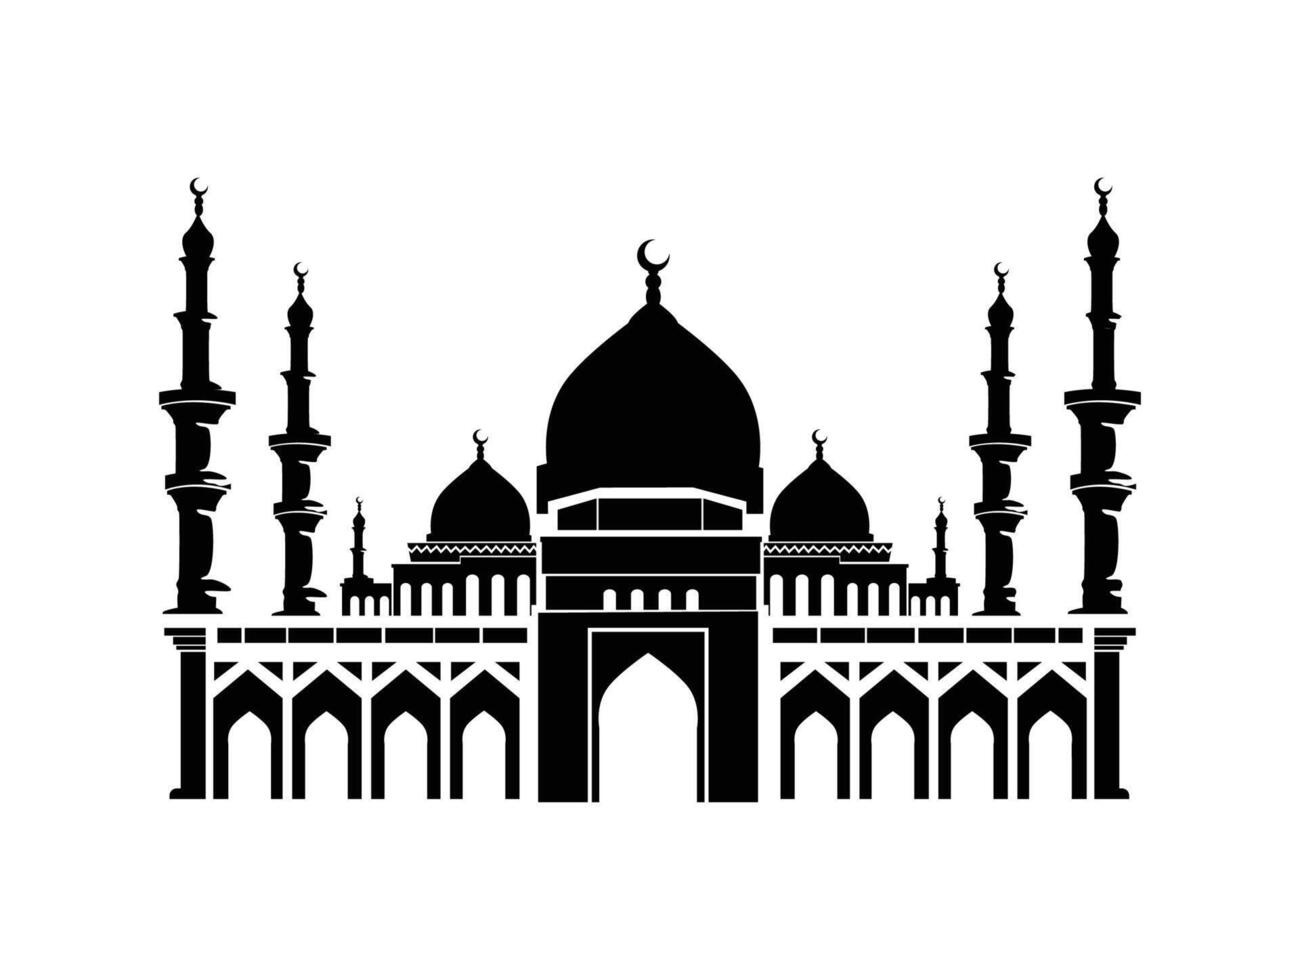 mezquita silueta vector aislar antecedentes Ramadán kareem